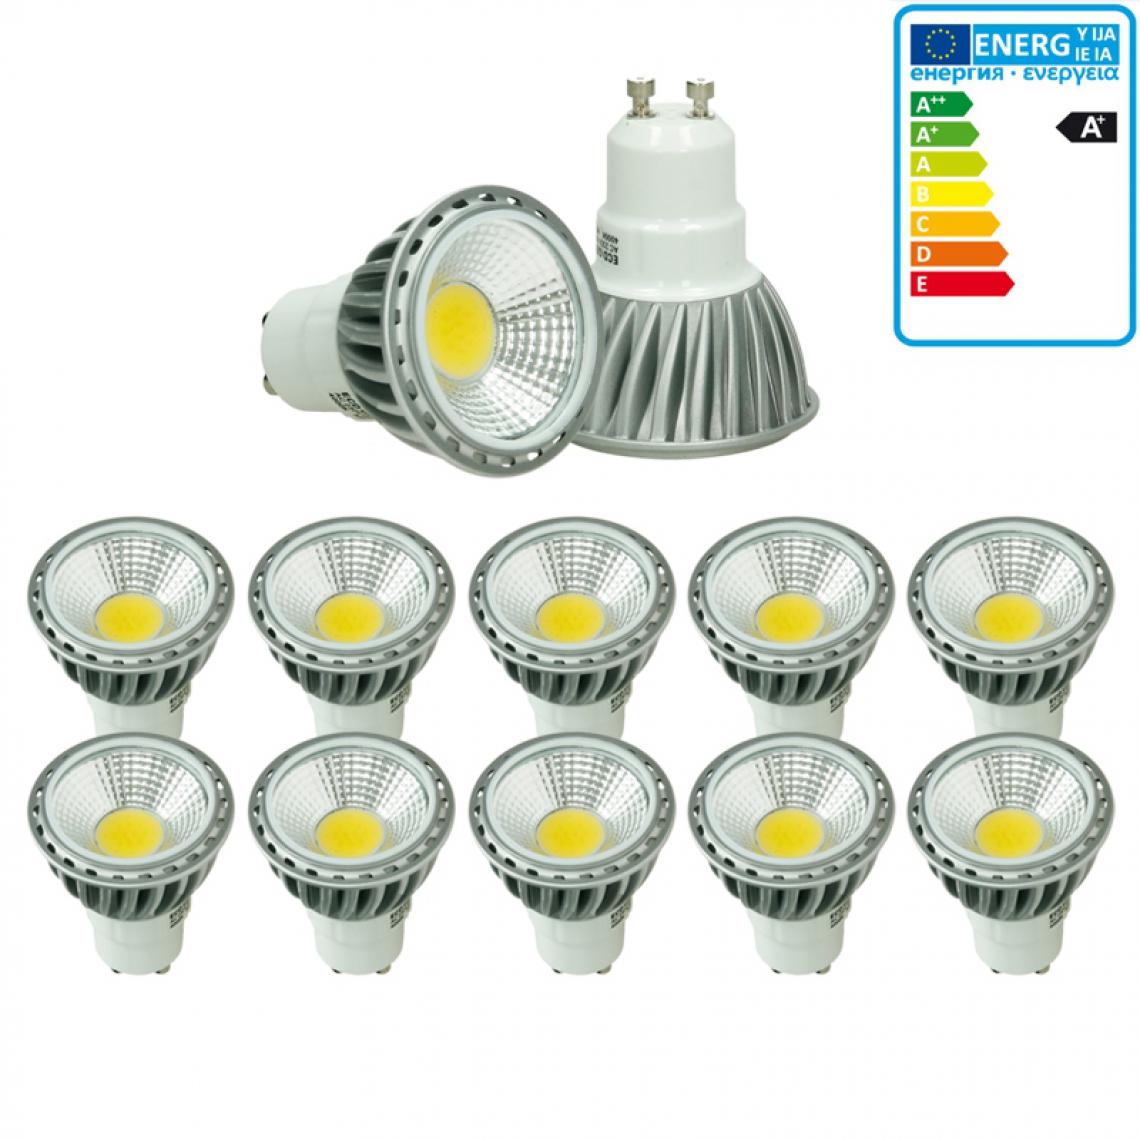 Ecd Germany - ECD Germany 10 x GU10 LED COB Spot 6W Lampe d'économie d'énergie d'environ 321 lumens remplace Lampe halogène 40W 6000K Blanc Froid - Ampoules LED